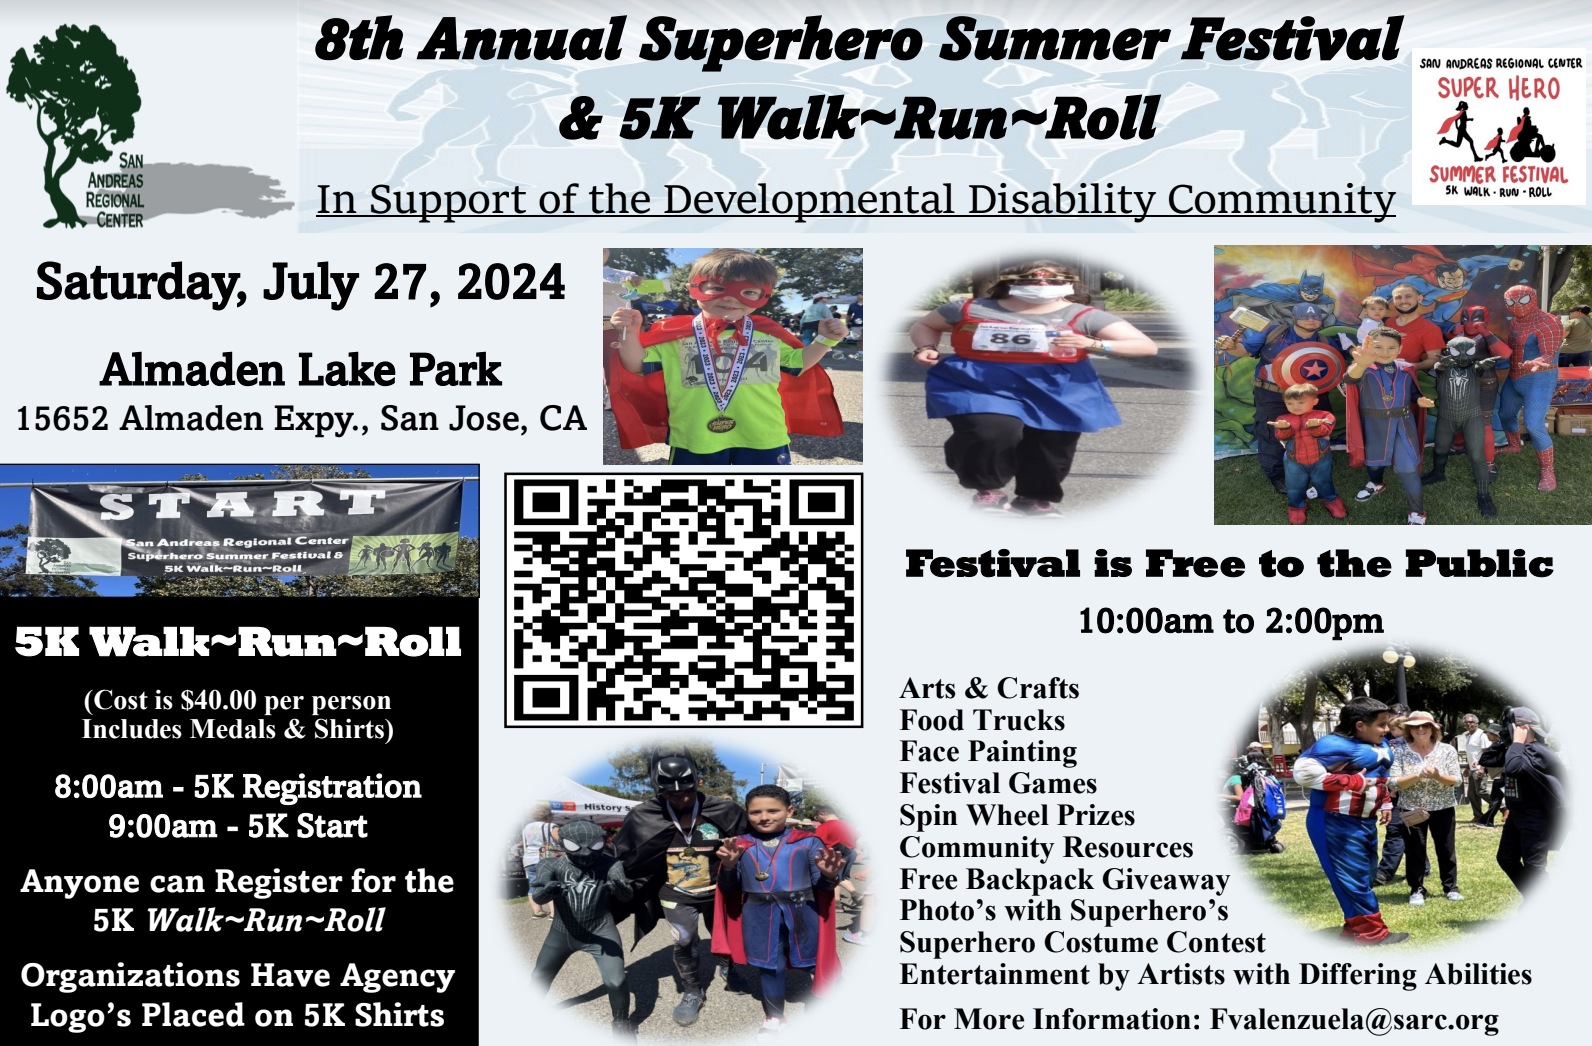 San Andreas Regional Center Superhero Summer Festival Flyer